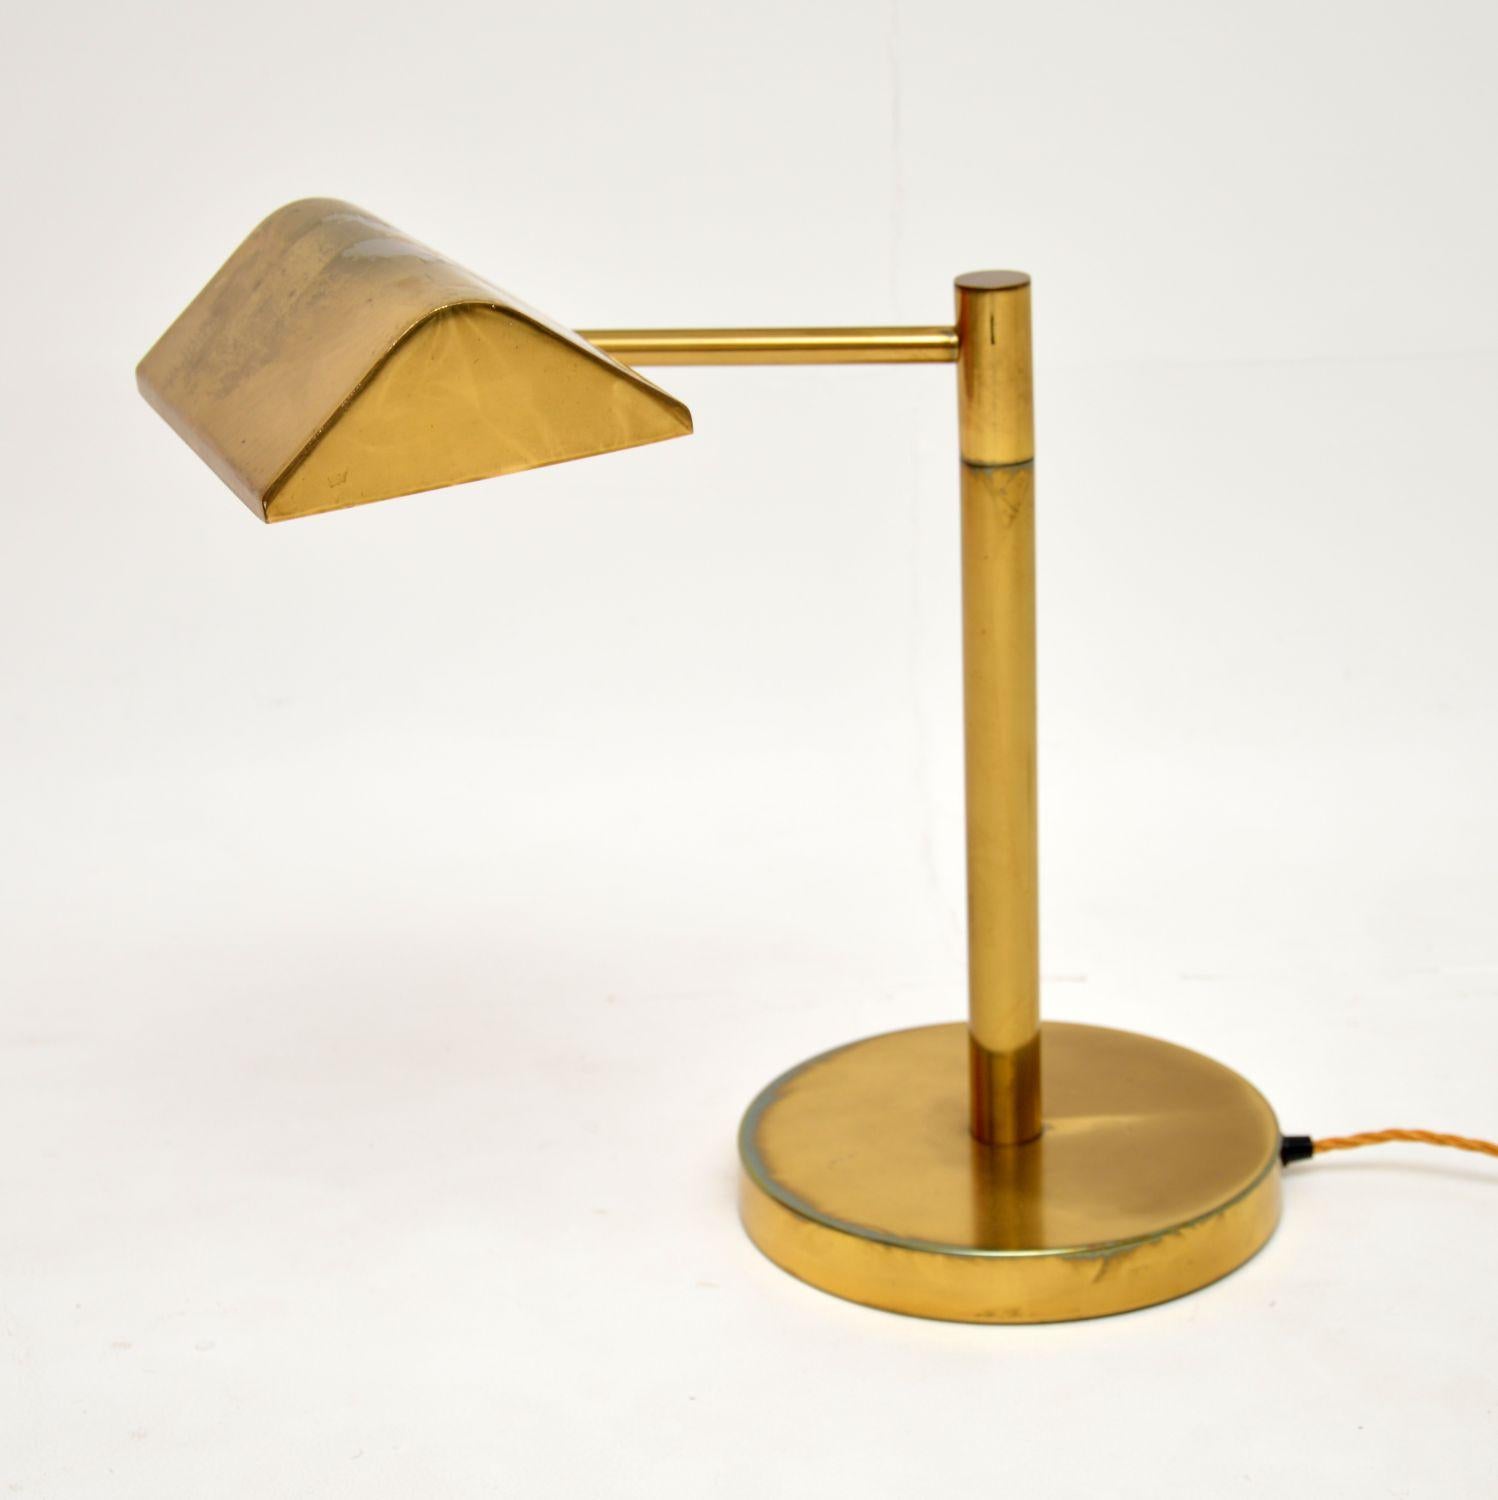 Une lampe de bureau vintage en laiton très élégante et extrêmement bien faite. Il a été fabriqué en Angleterre, il date des années 1960-70.

Il est d'une qualité incroyable, il est très lourd pour sa taille. L'abat-jour est monté sur un bras